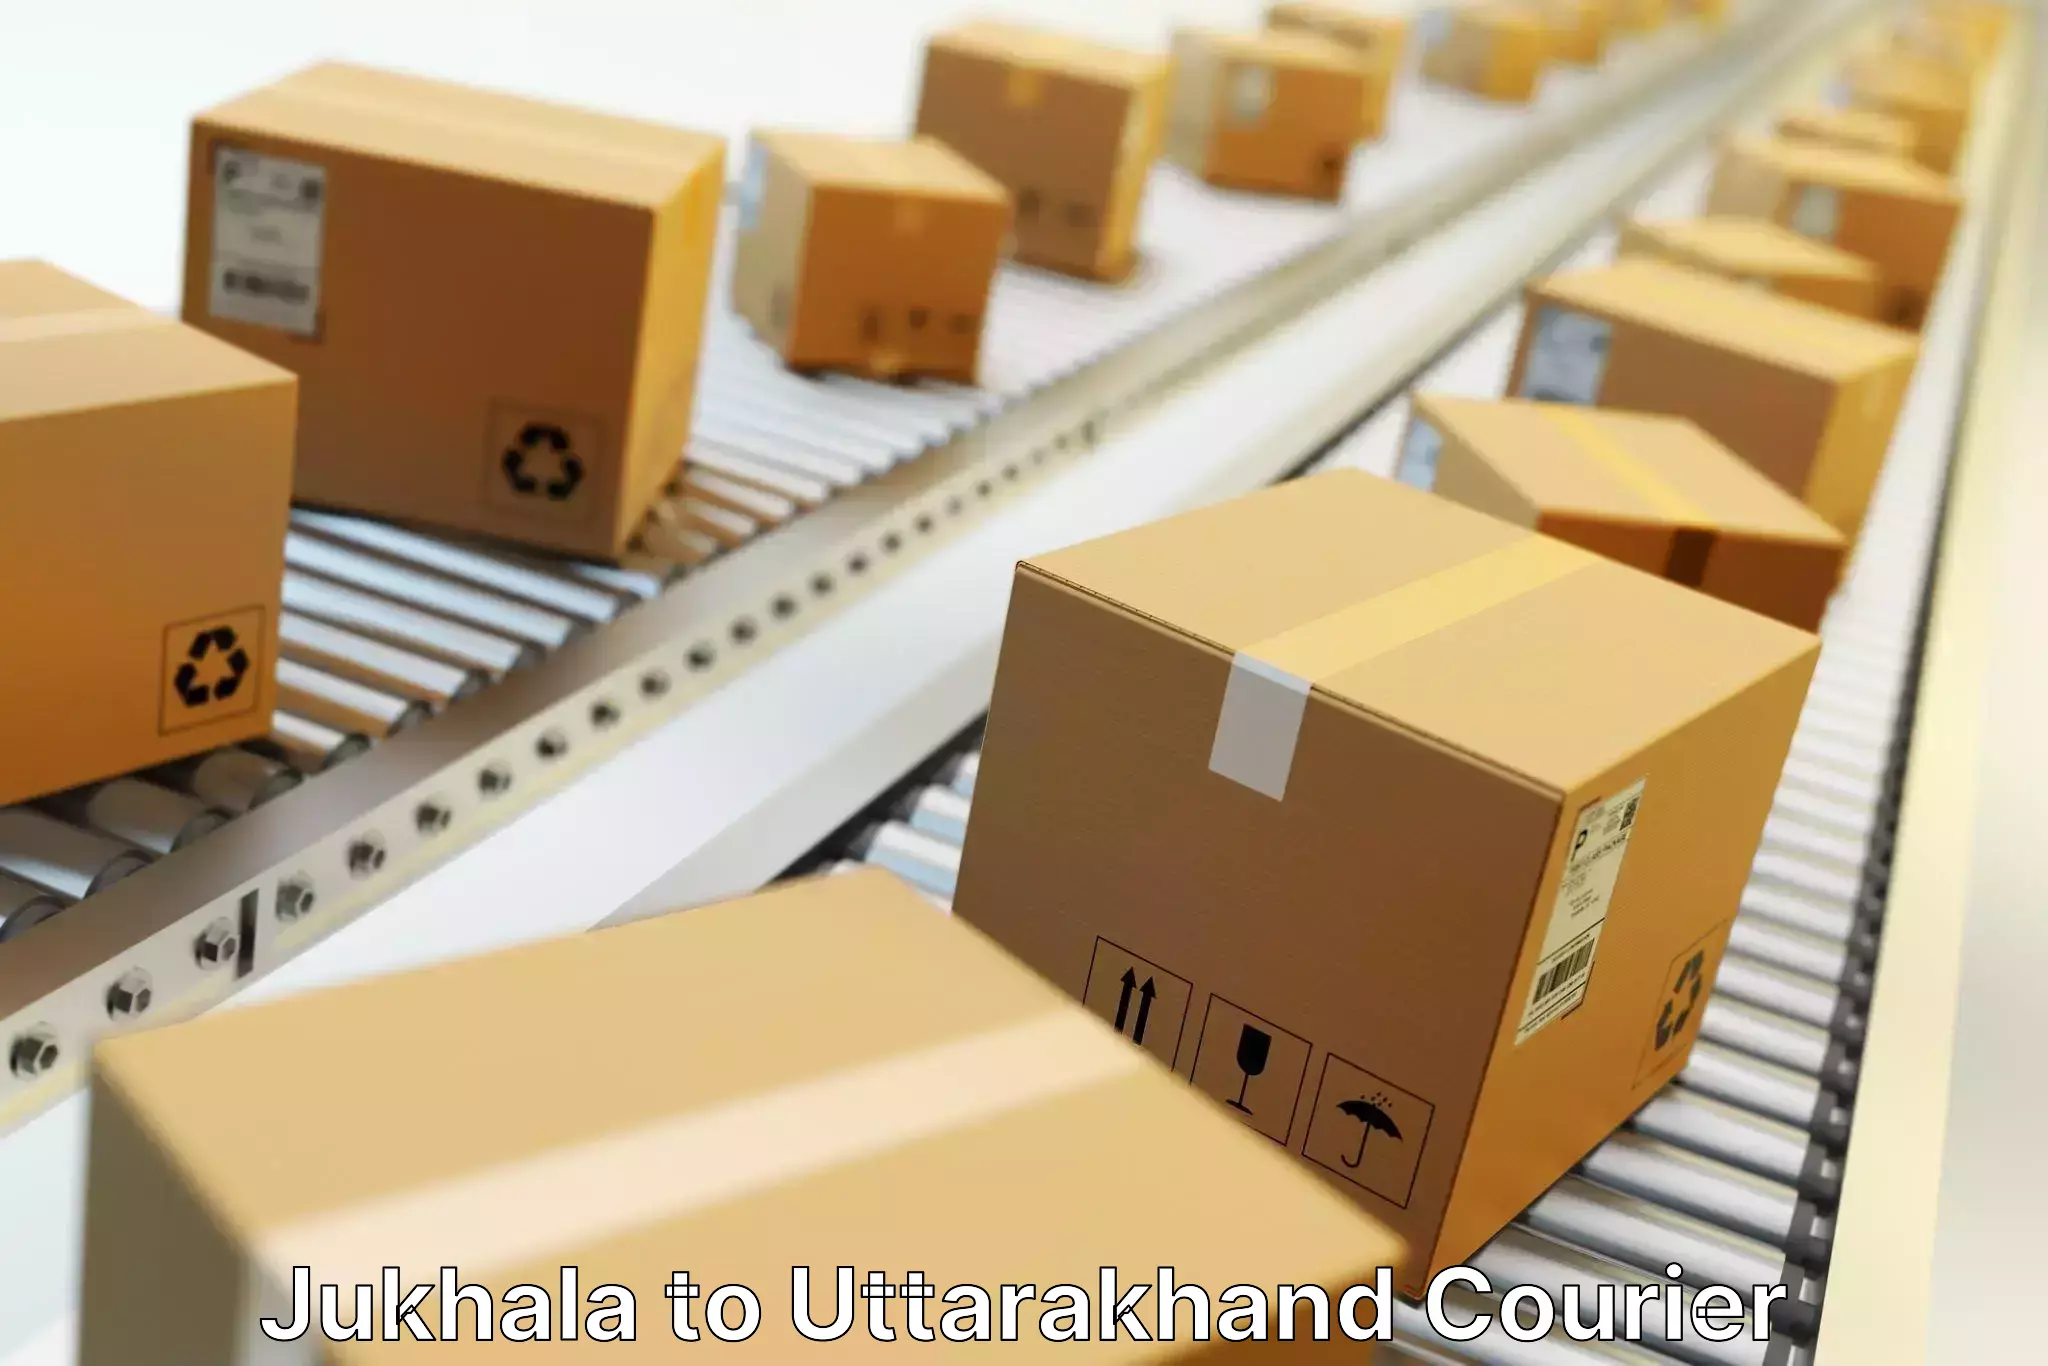 Fast-track shipping solutions Jukhala to Haldwani